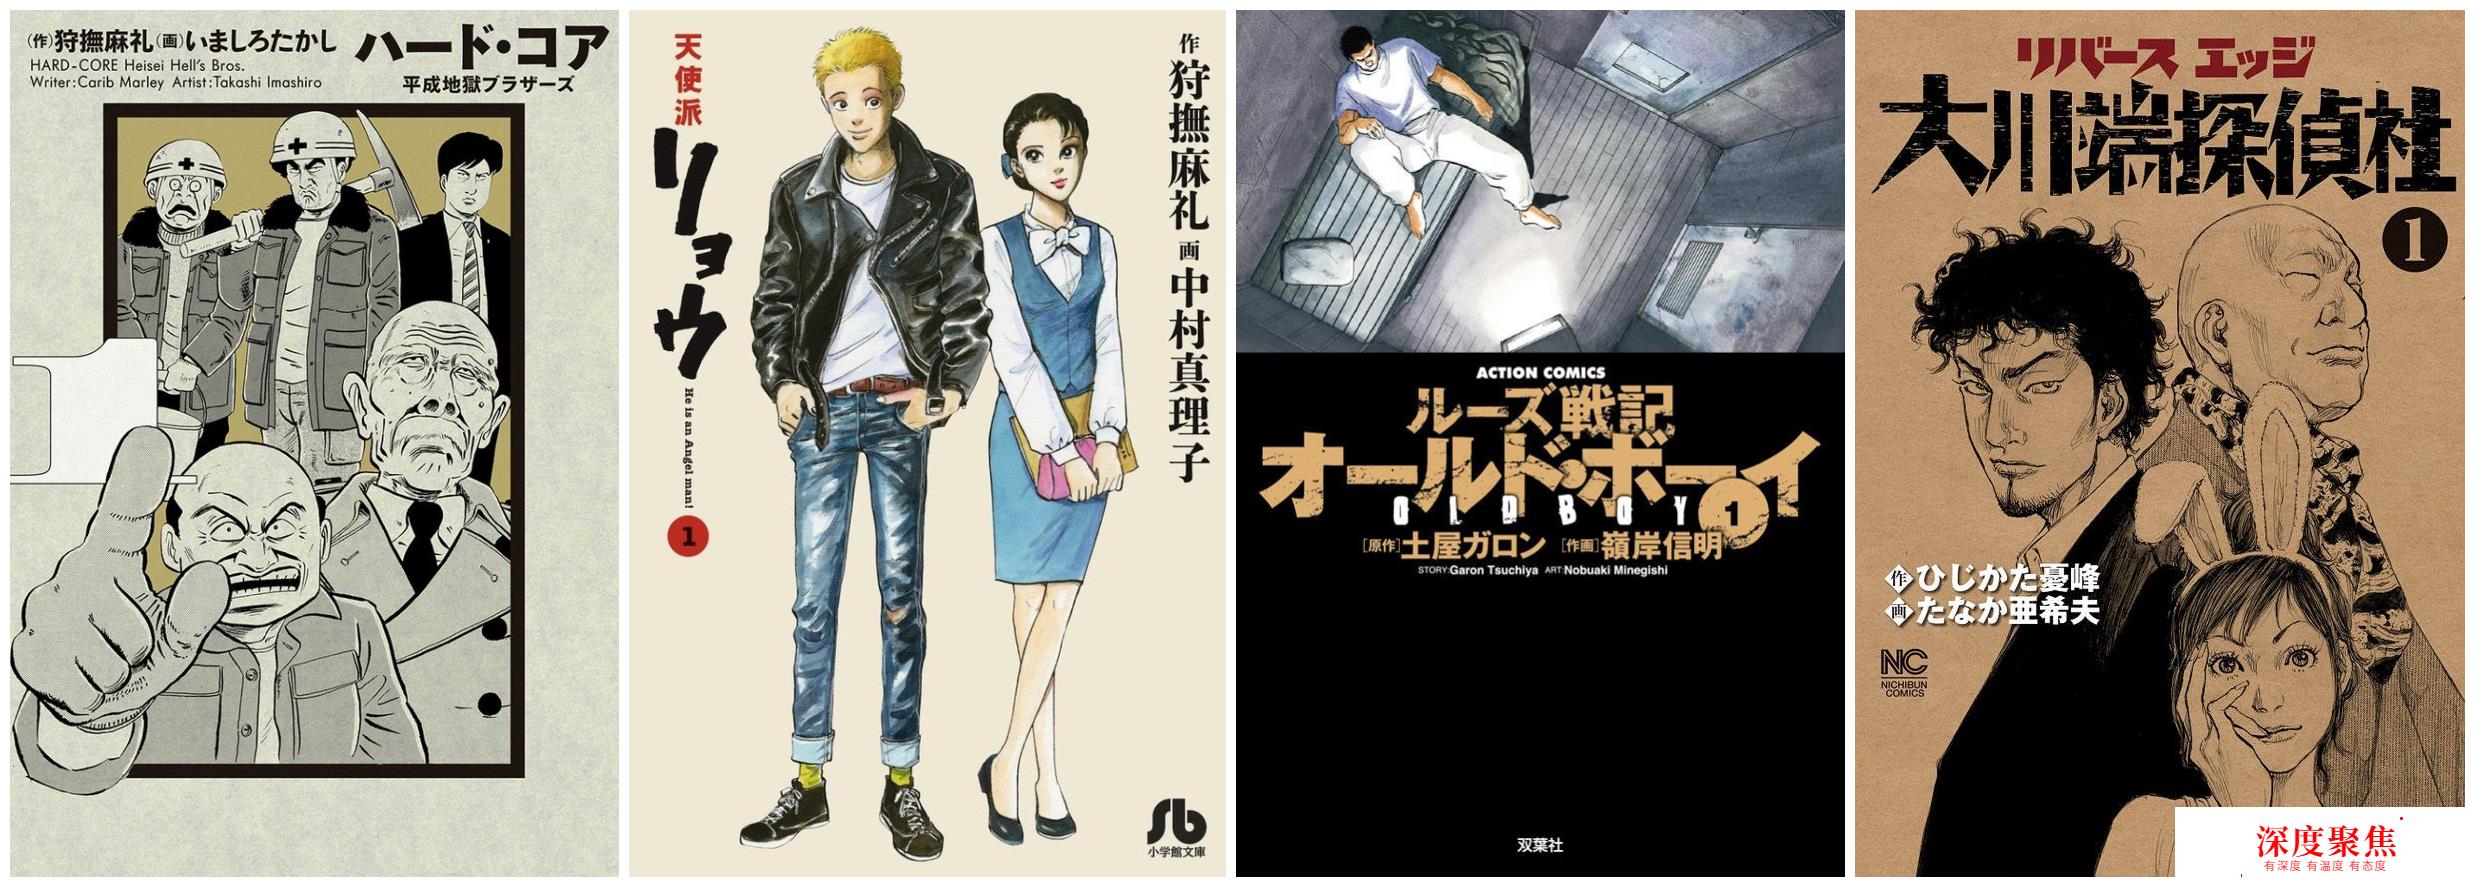 韩国电影《老男孩》“抄袭”日本漫画《铁汉强龙》获2004戛纳大奖